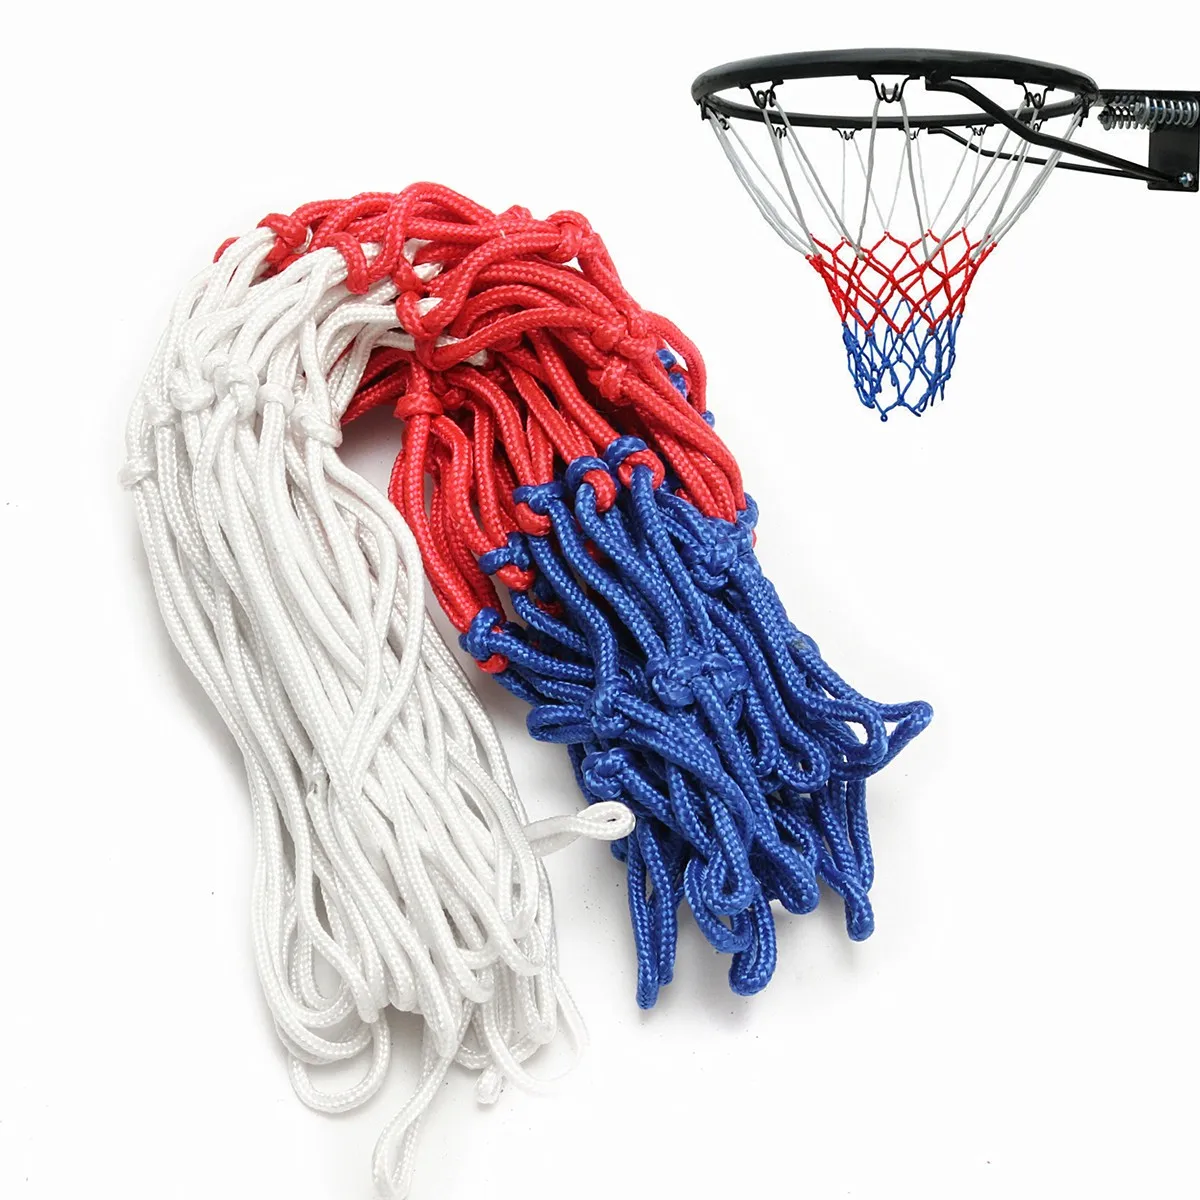 

5mm Basketball Rim Mesh Net Durable Basketball Net Heavy Duty Nylon Net Hoop Goal Rim Mesh Fits standard basketball rims